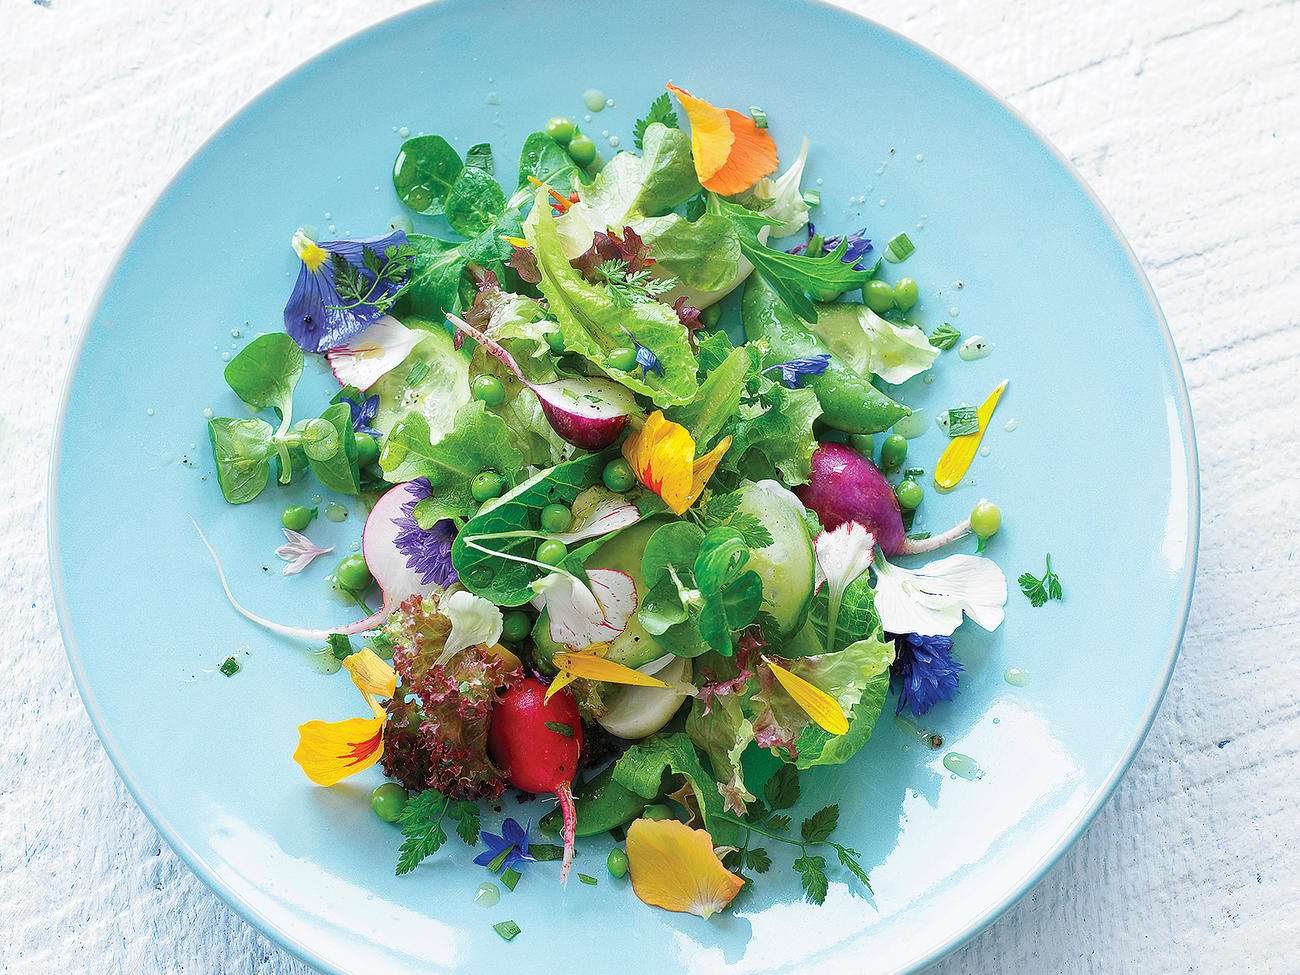 Eat-Your-Garden Salad